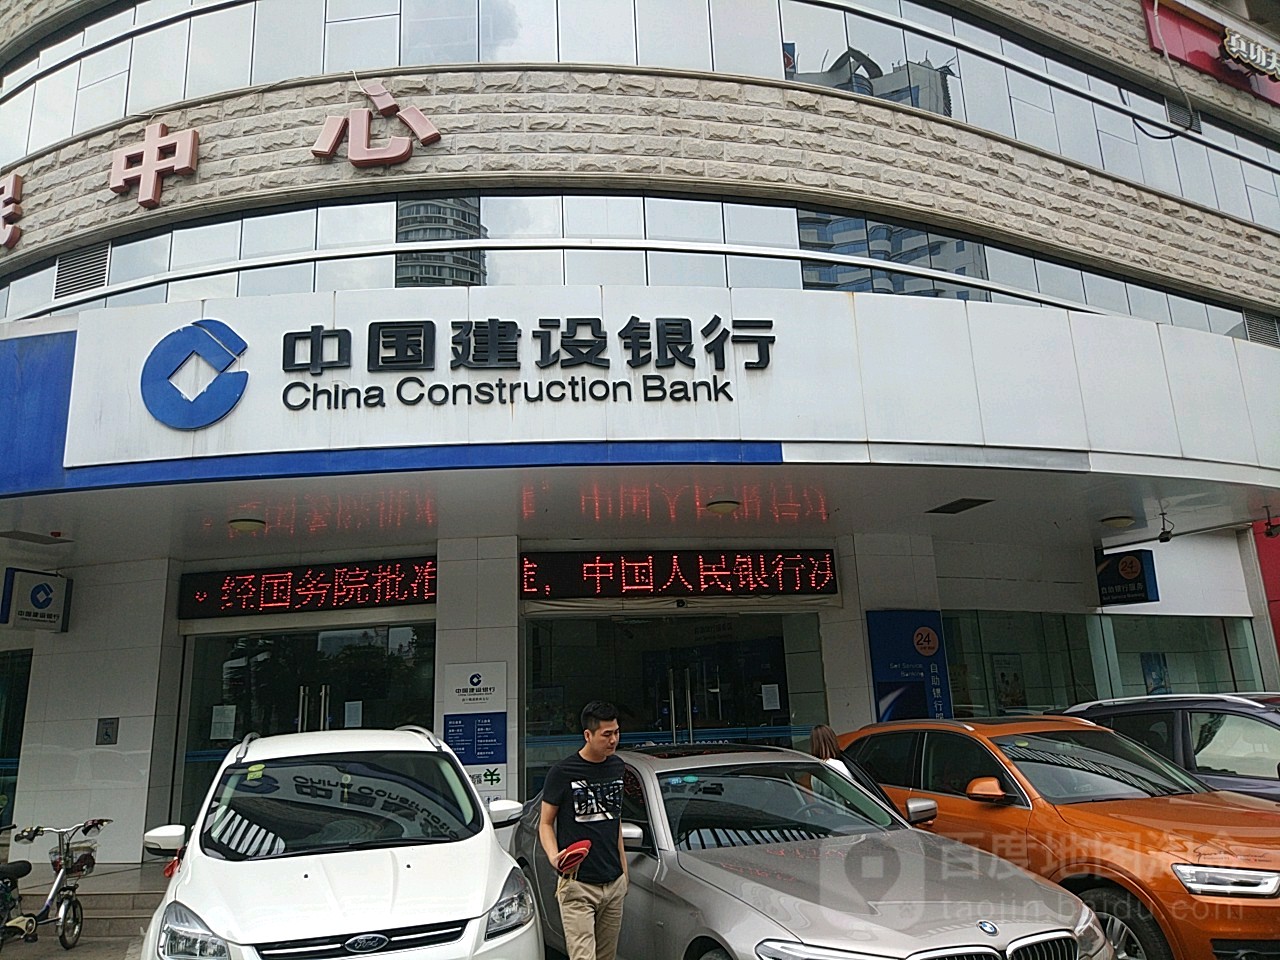 中國建設銀行24小時自助銀行(南寧桃源路西支行)